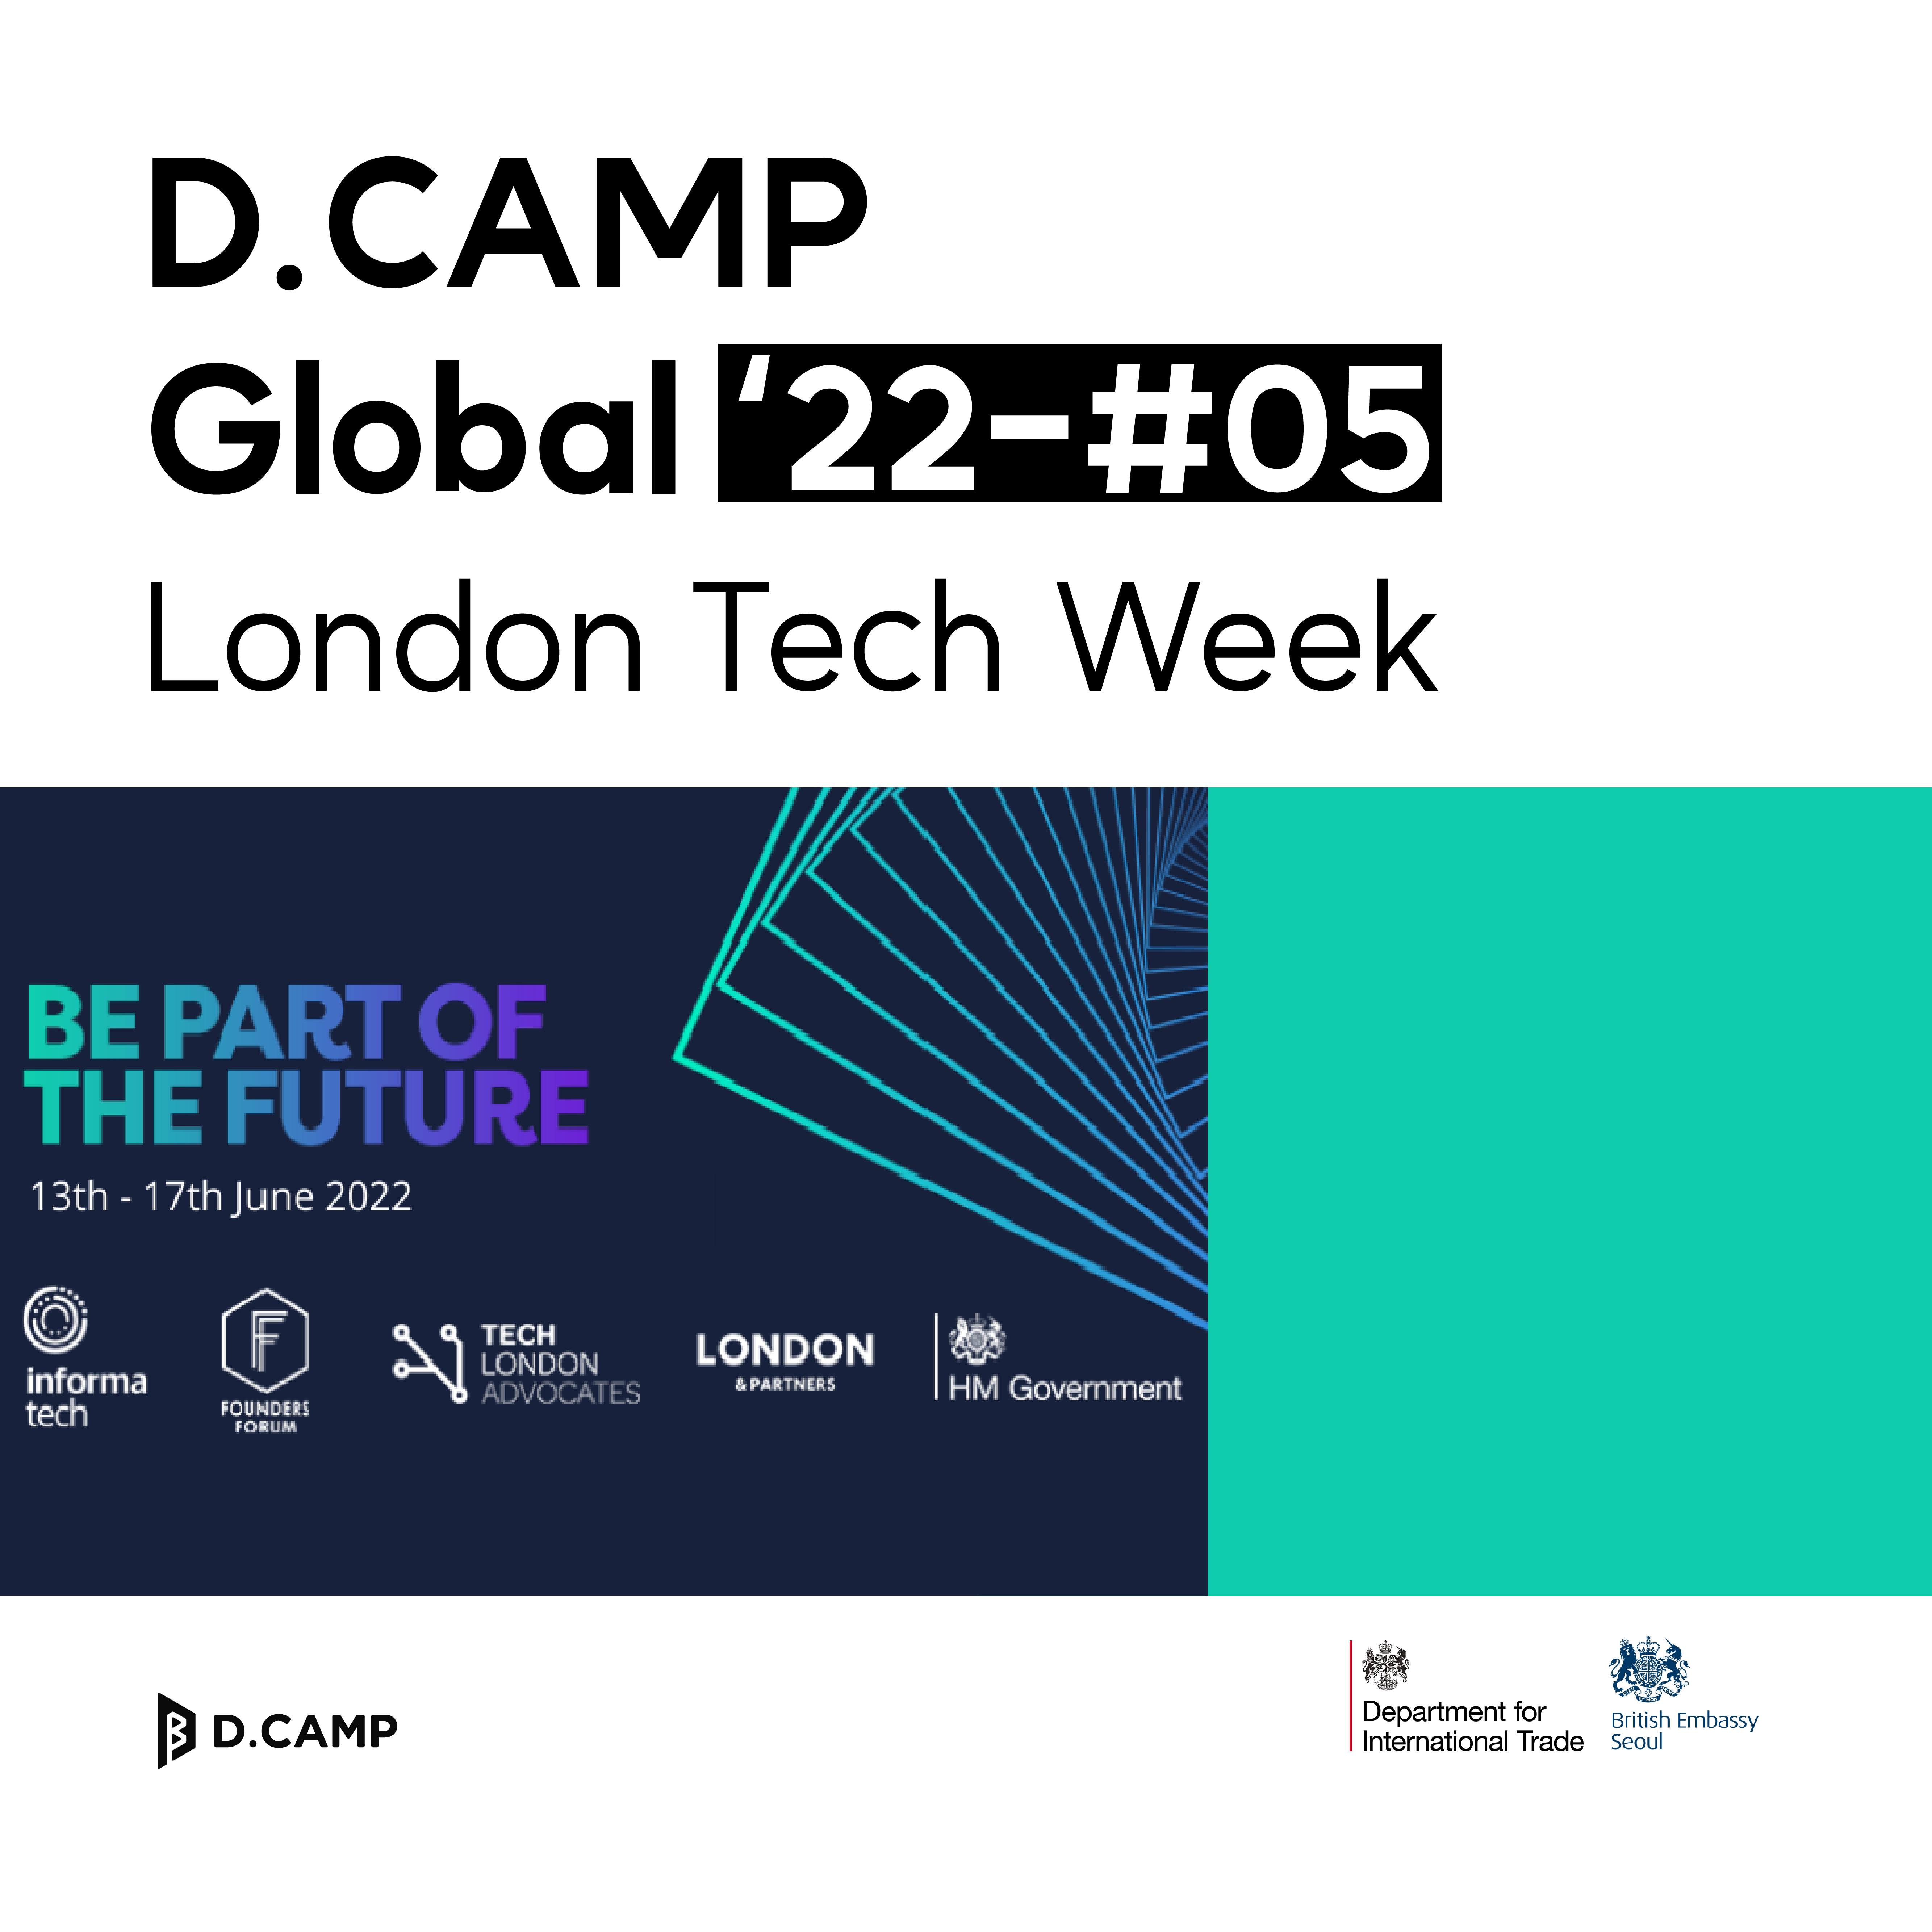 [D.CAMP Global] London Tech Week Startup Delegation Program 의 웹포스터